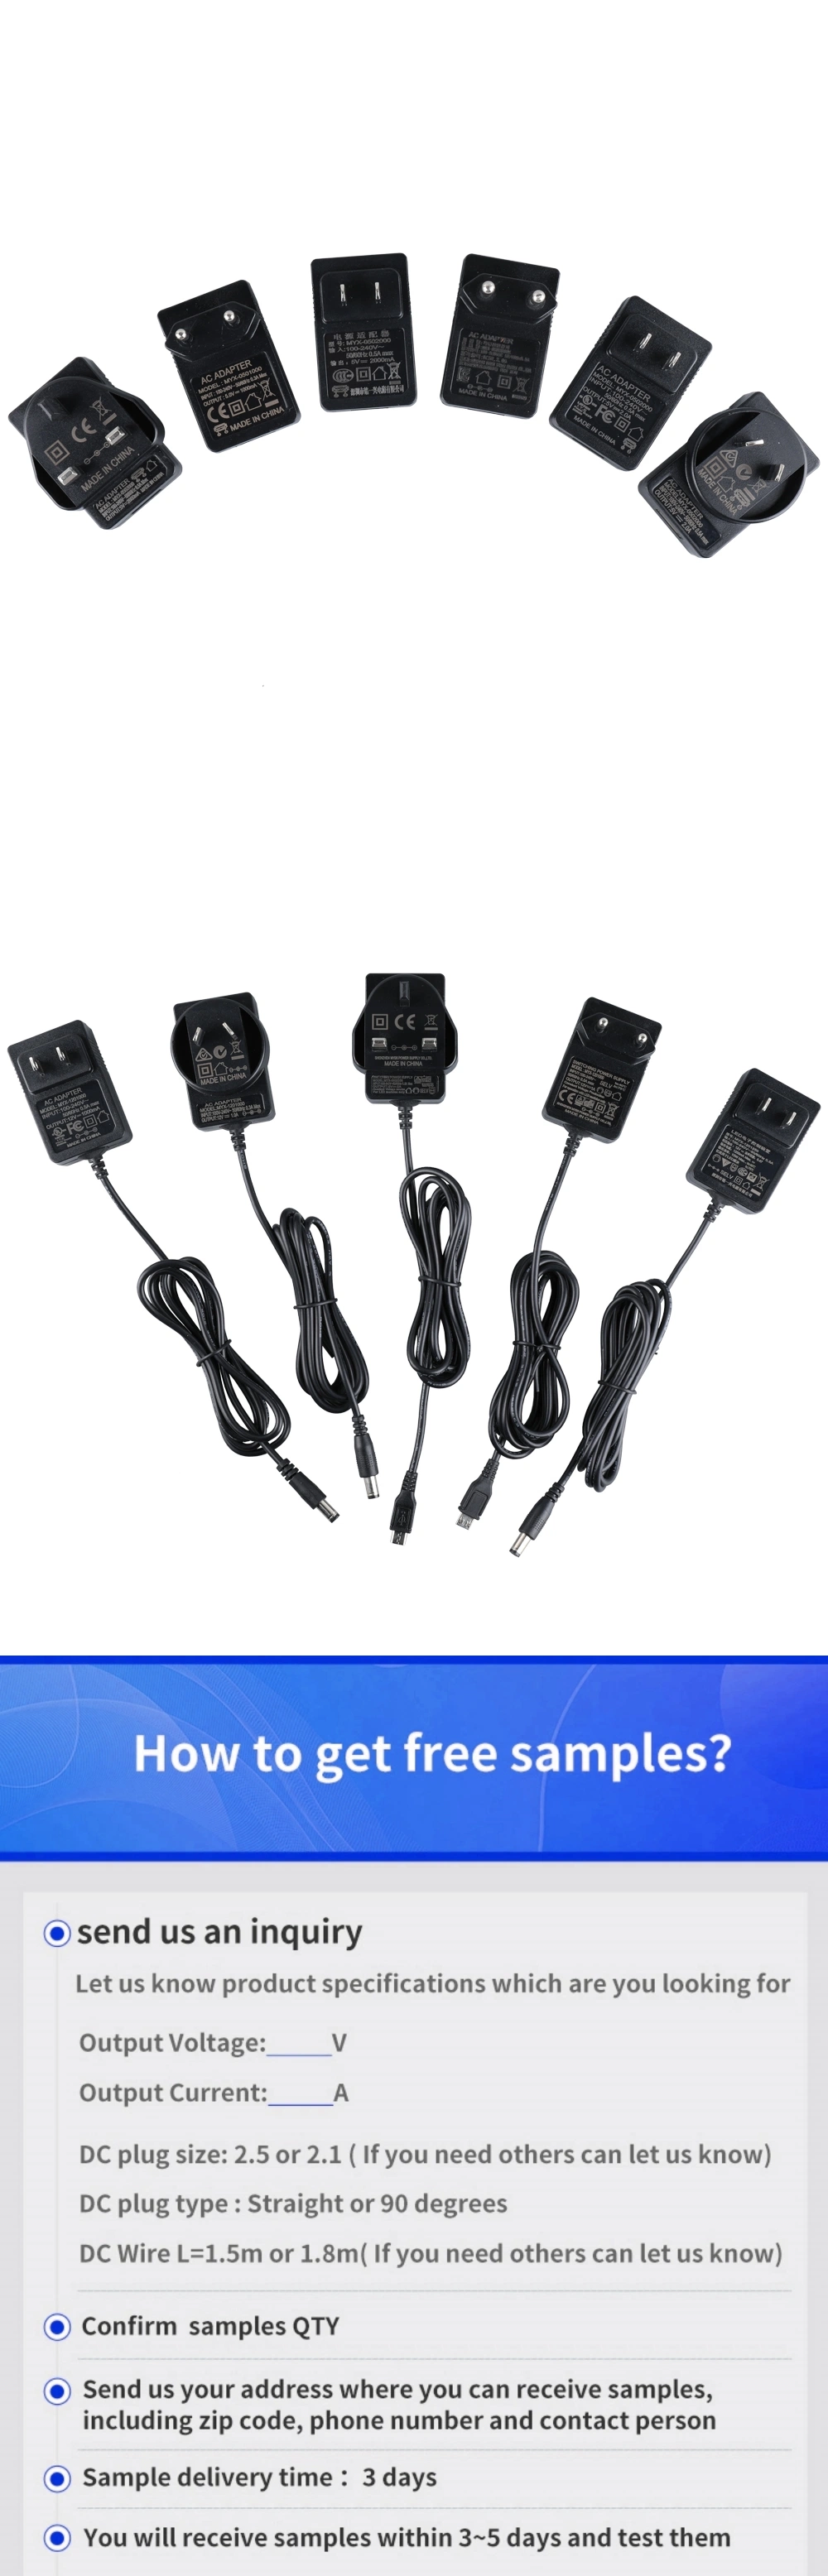 Power Adapter 12V 2A Power Adapter 5V 12V 24V 36V 2A 3A UK Us UK CE Plug Power Supply with ETL, FCC, Kcc, Kc, Bis, PSE, CE, FCC, Certs